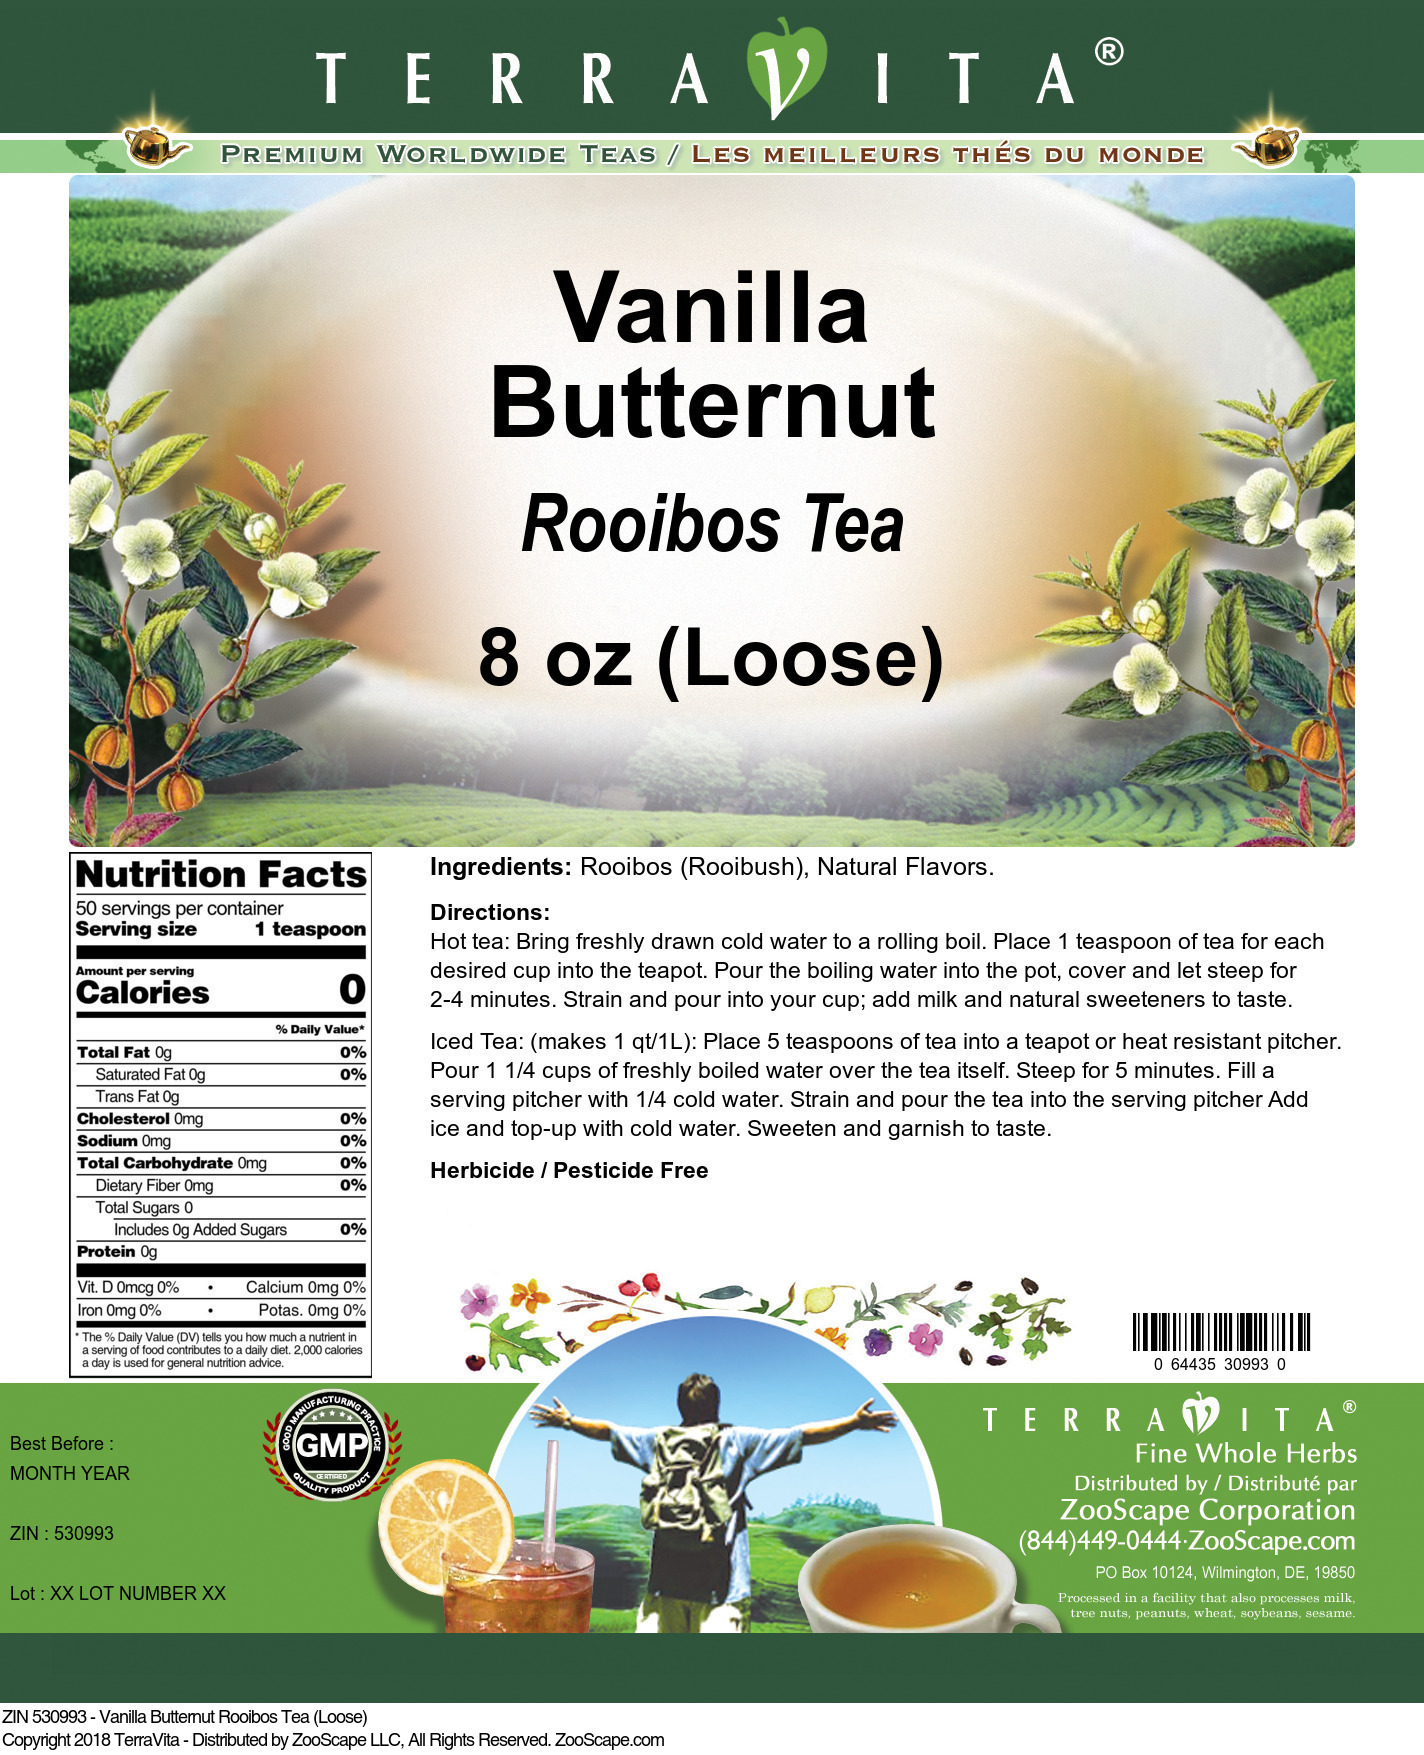 Vanilla Butternut Rooibos Tea (Loose) - Label